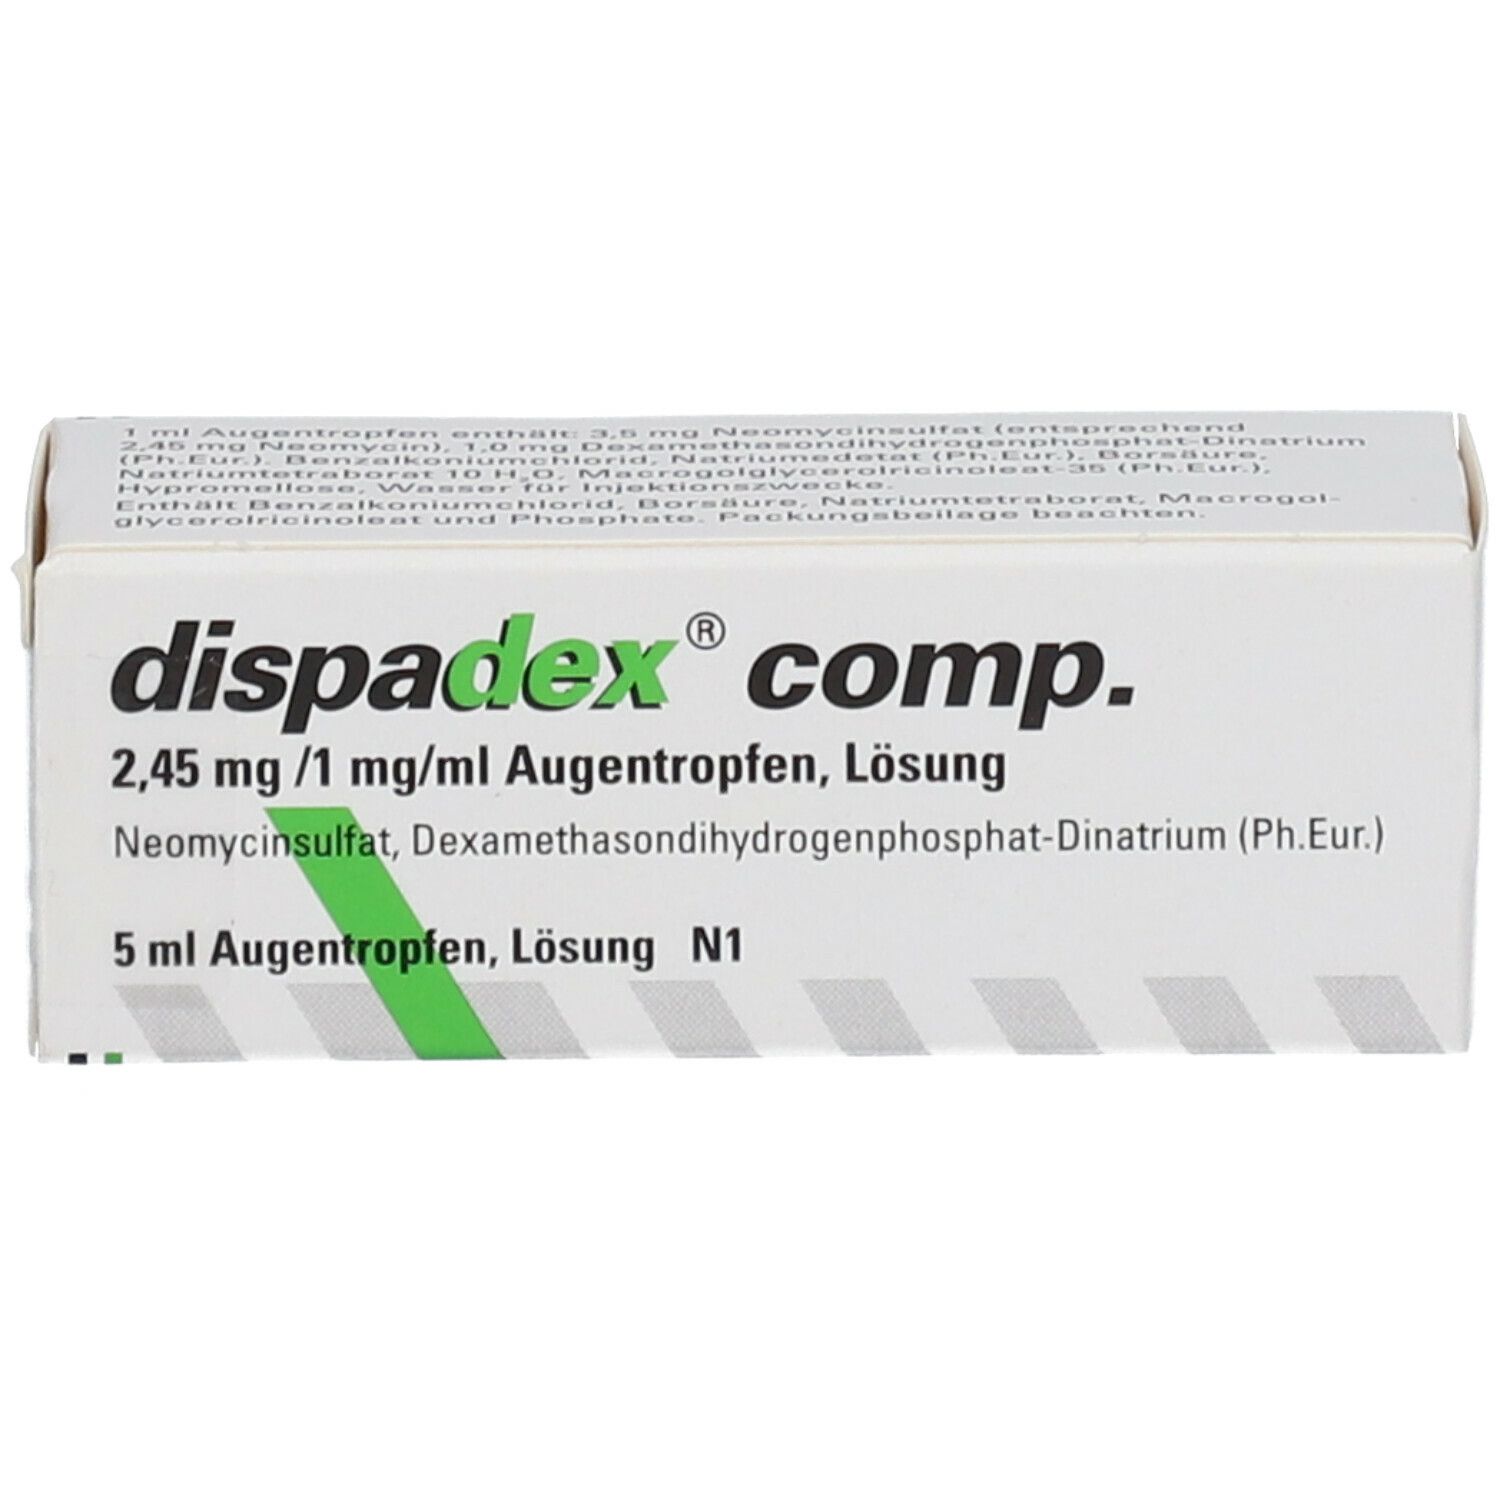 dispadex® comp. 2,45 mg/1 mg/ml